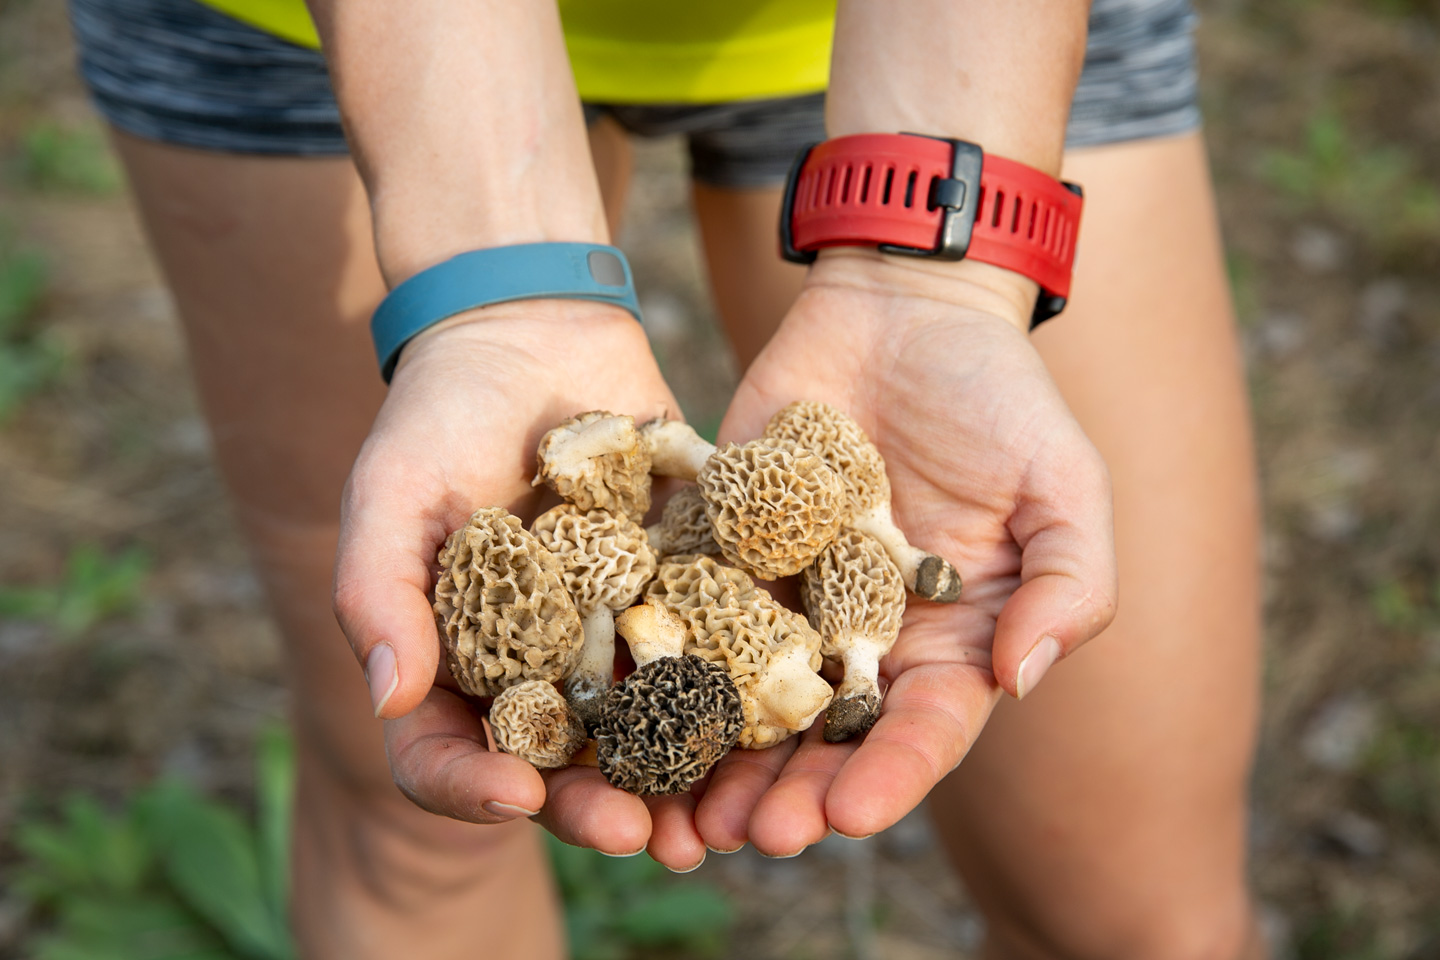 Read More: Morel mushroom season has begun in Nebraska